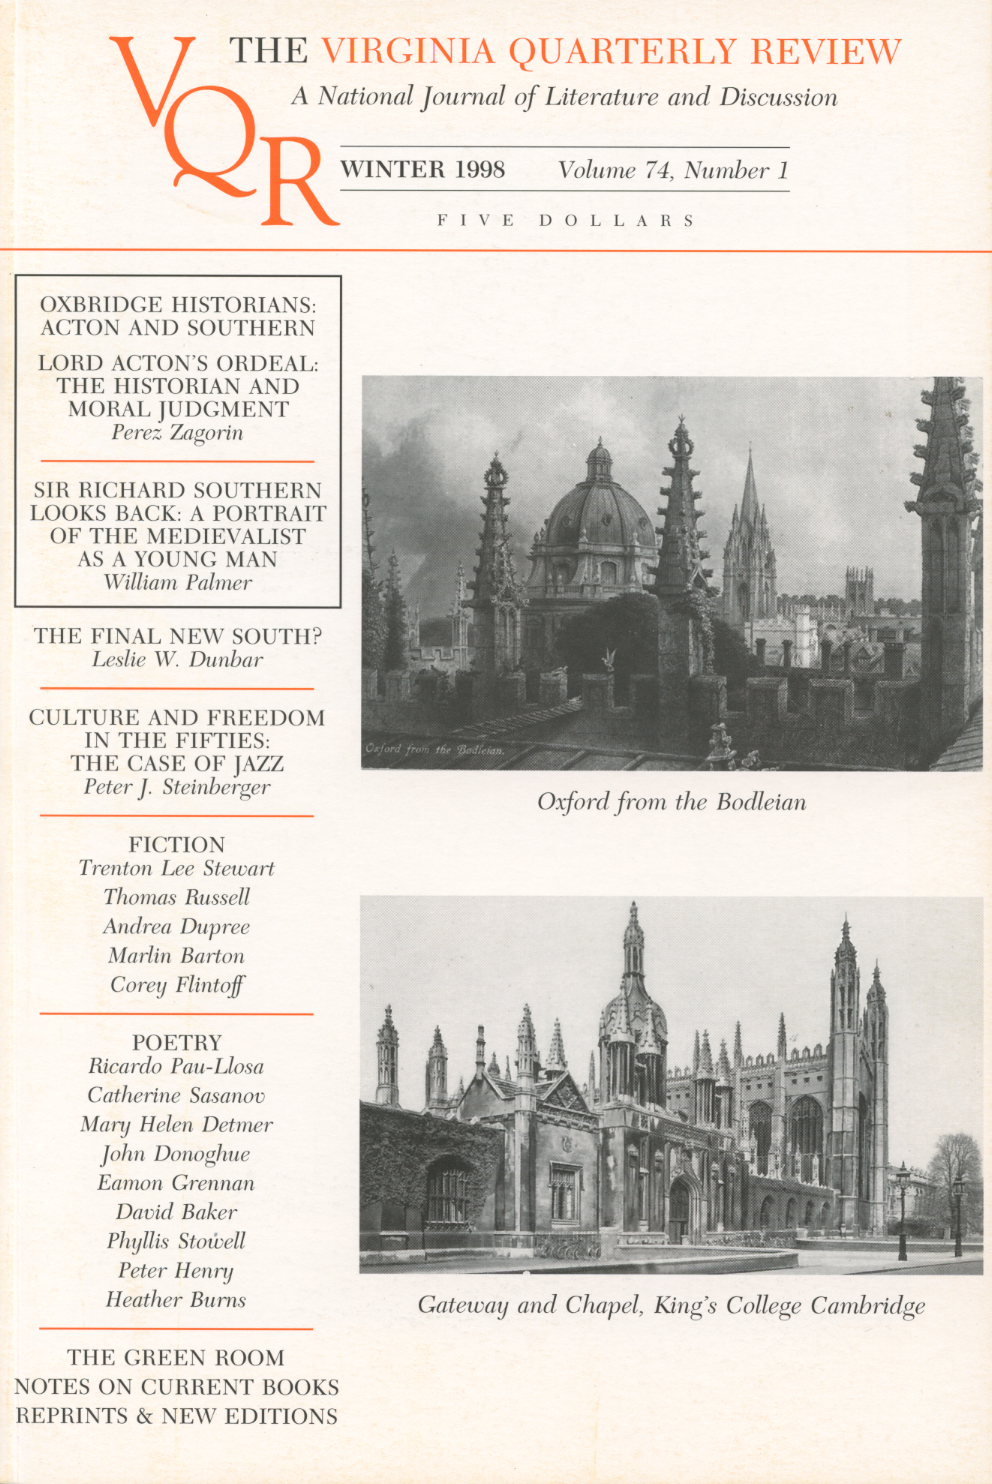 Virginia Quarterly Review, Winter 1998 cover